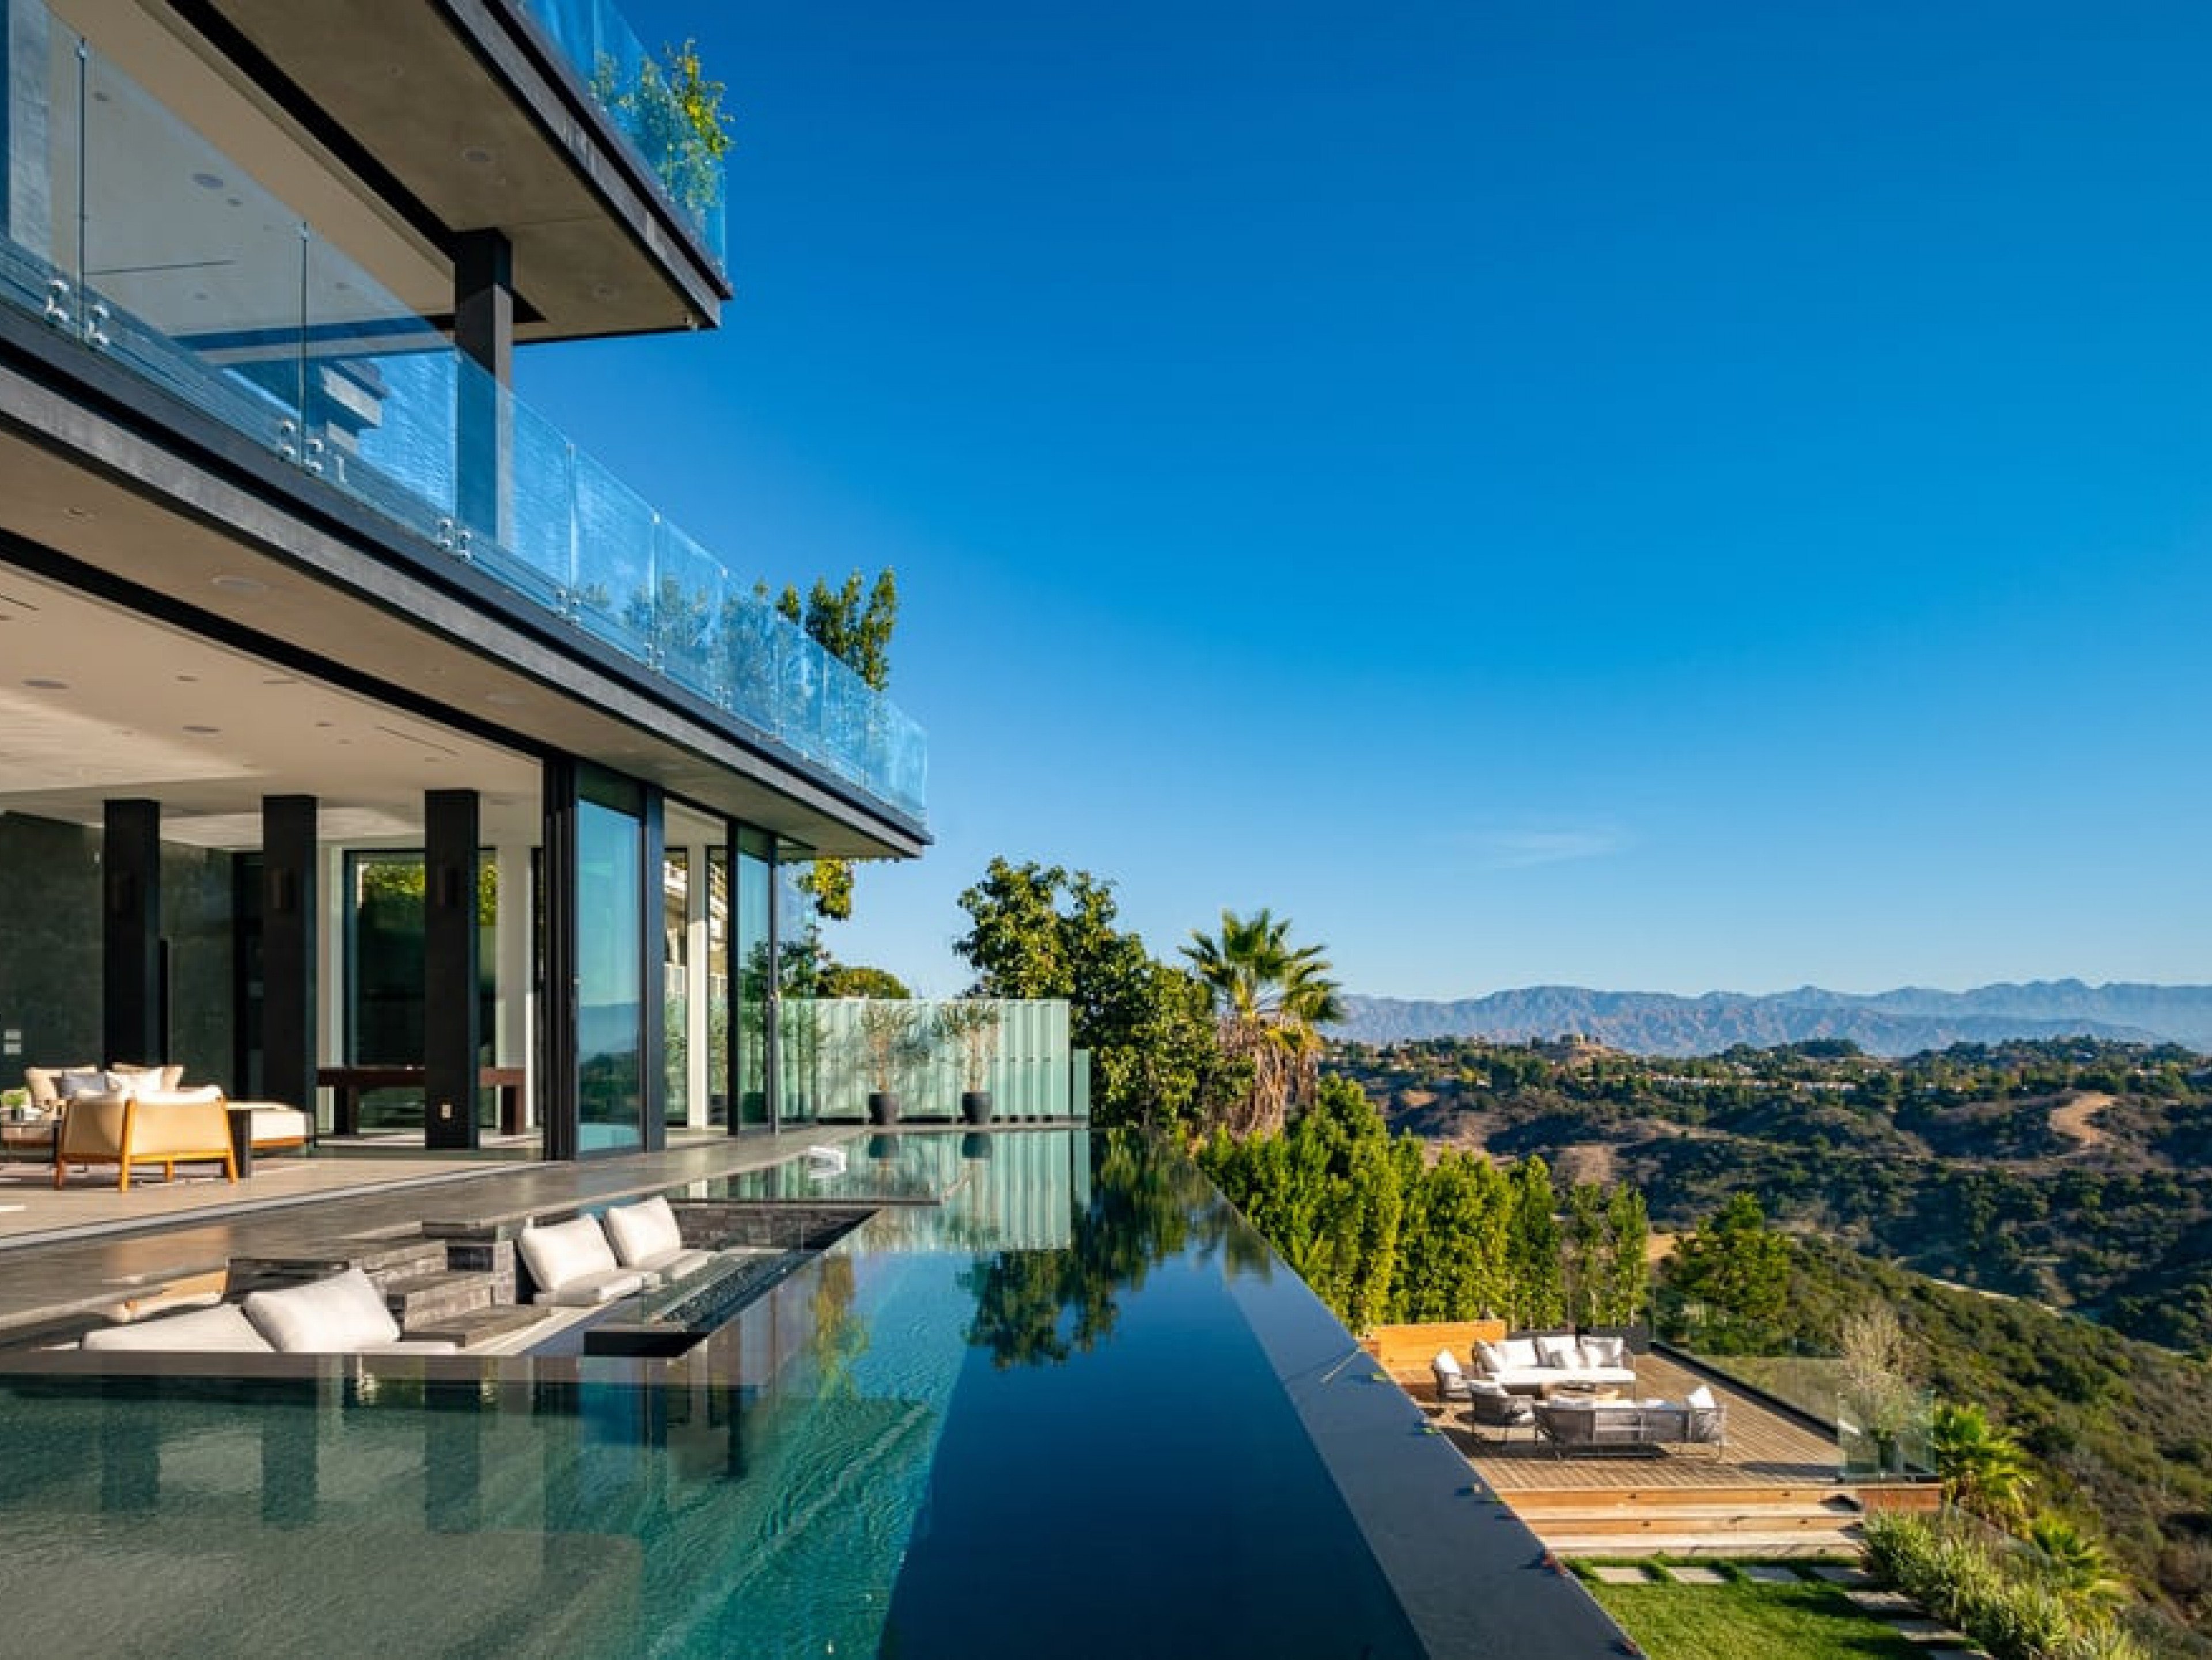 Los Angeles 163 pet-friendly villas with pools